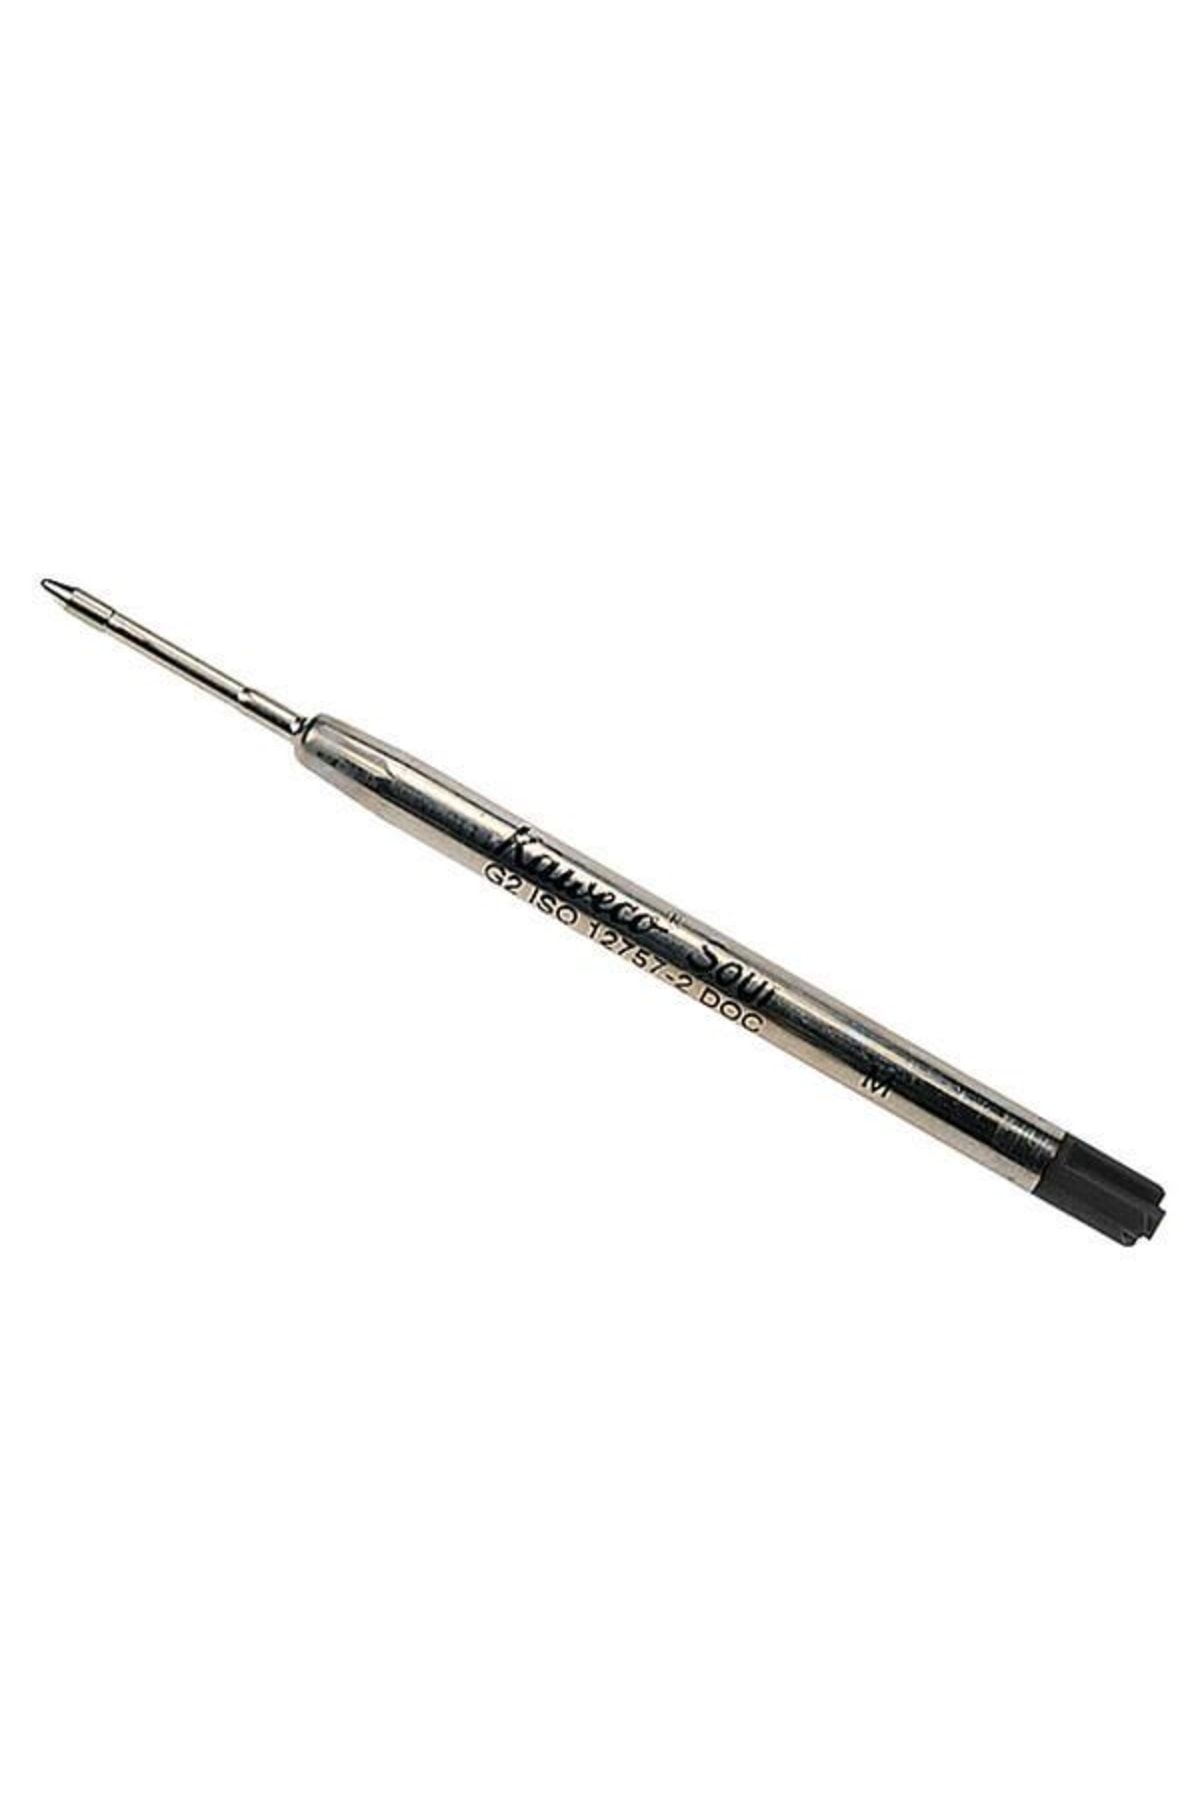 Kaweco Tukenmez Kalem Refılı G2 Sıyah 1 Lı (377)